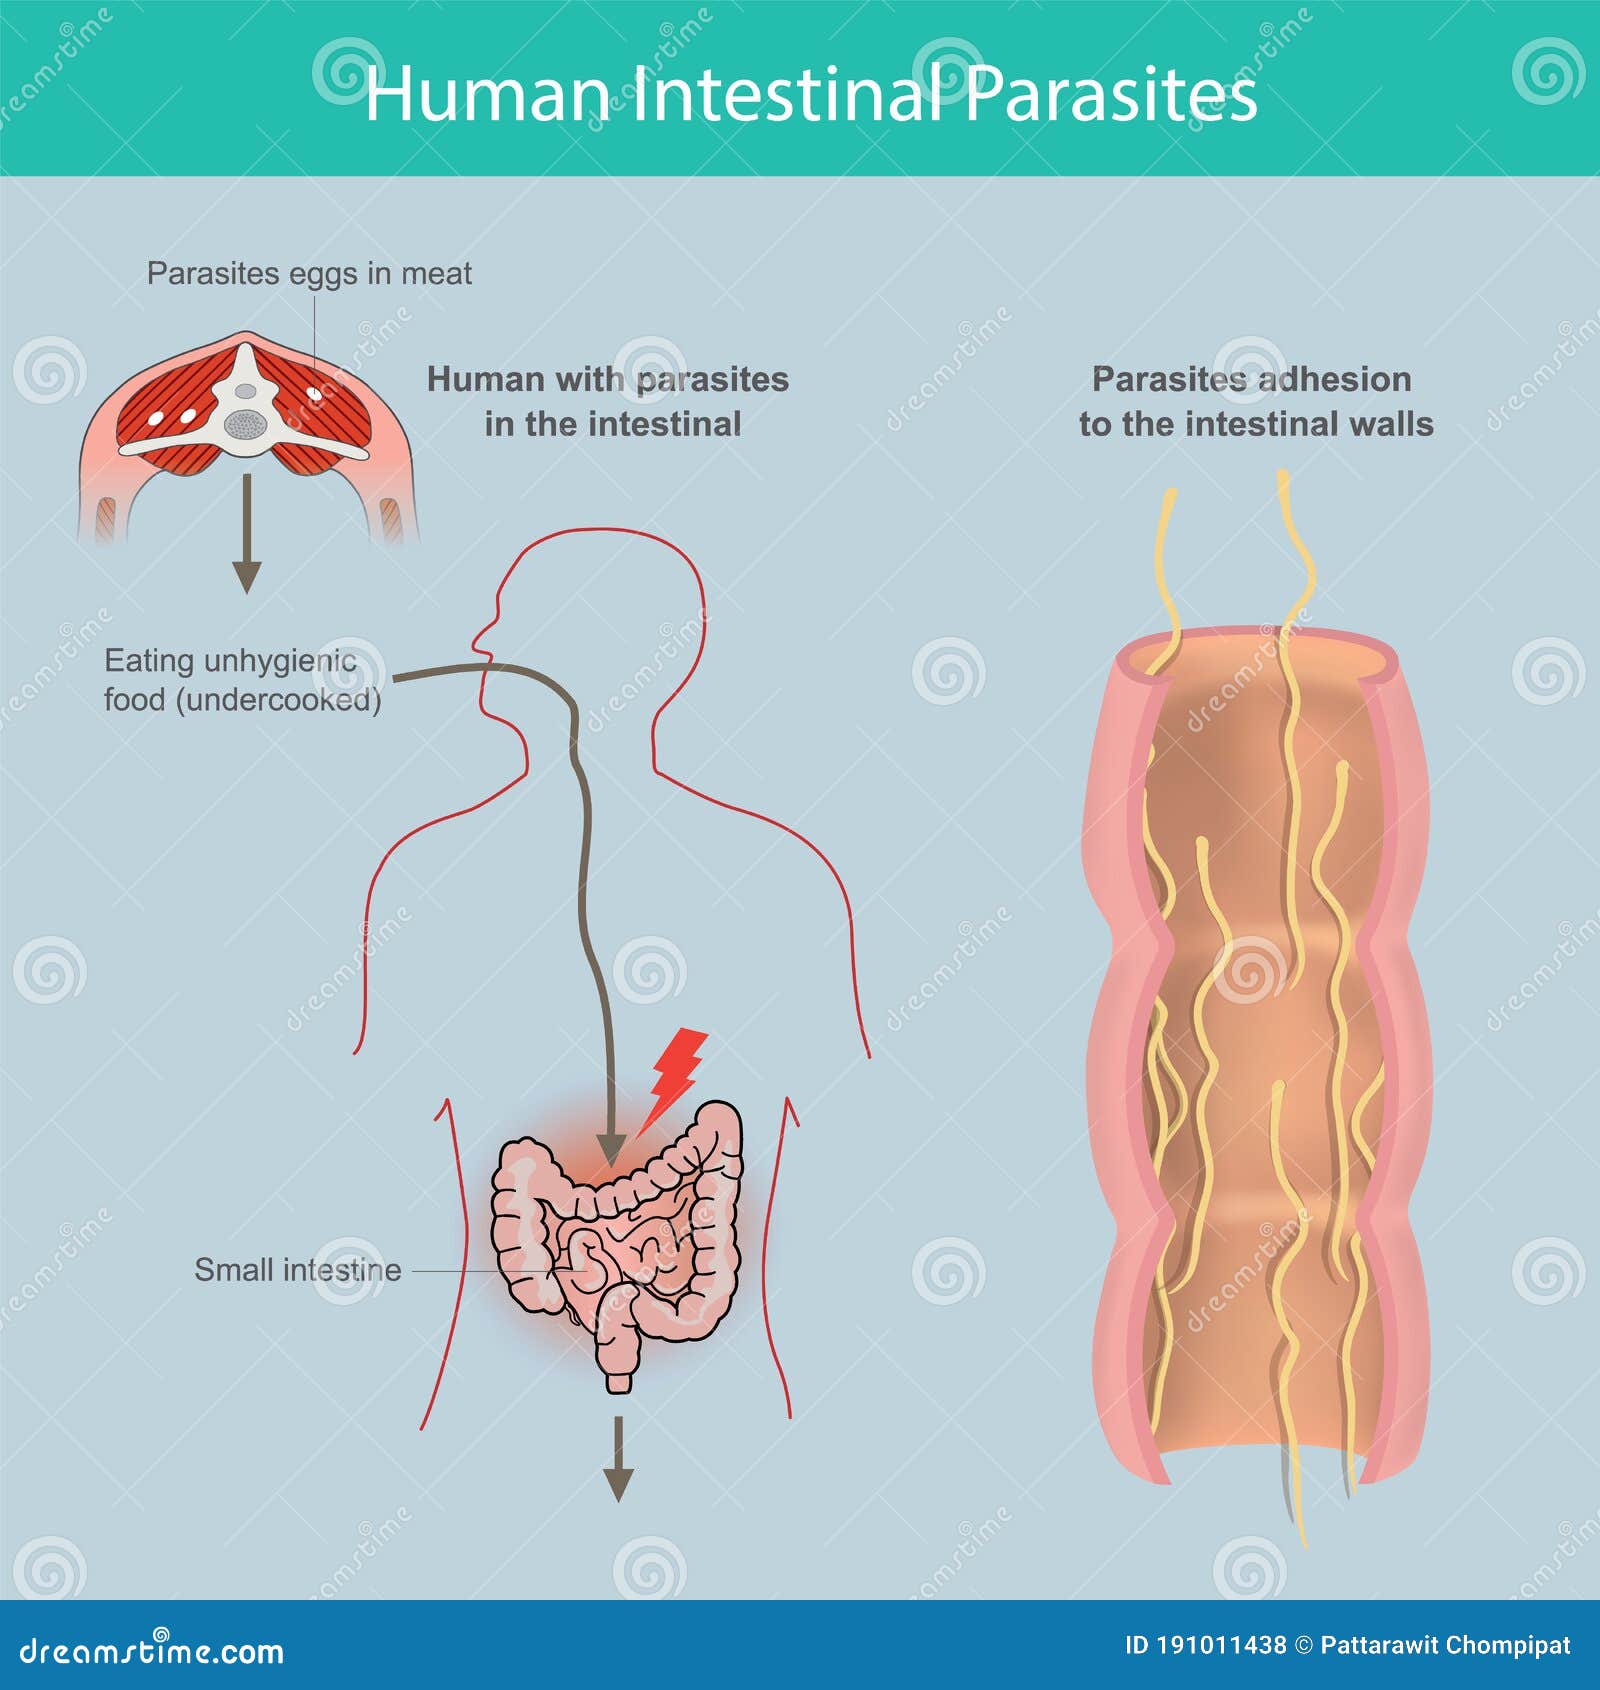 Știai că poți avea un parazit intestinal fără să-ți dai seama?